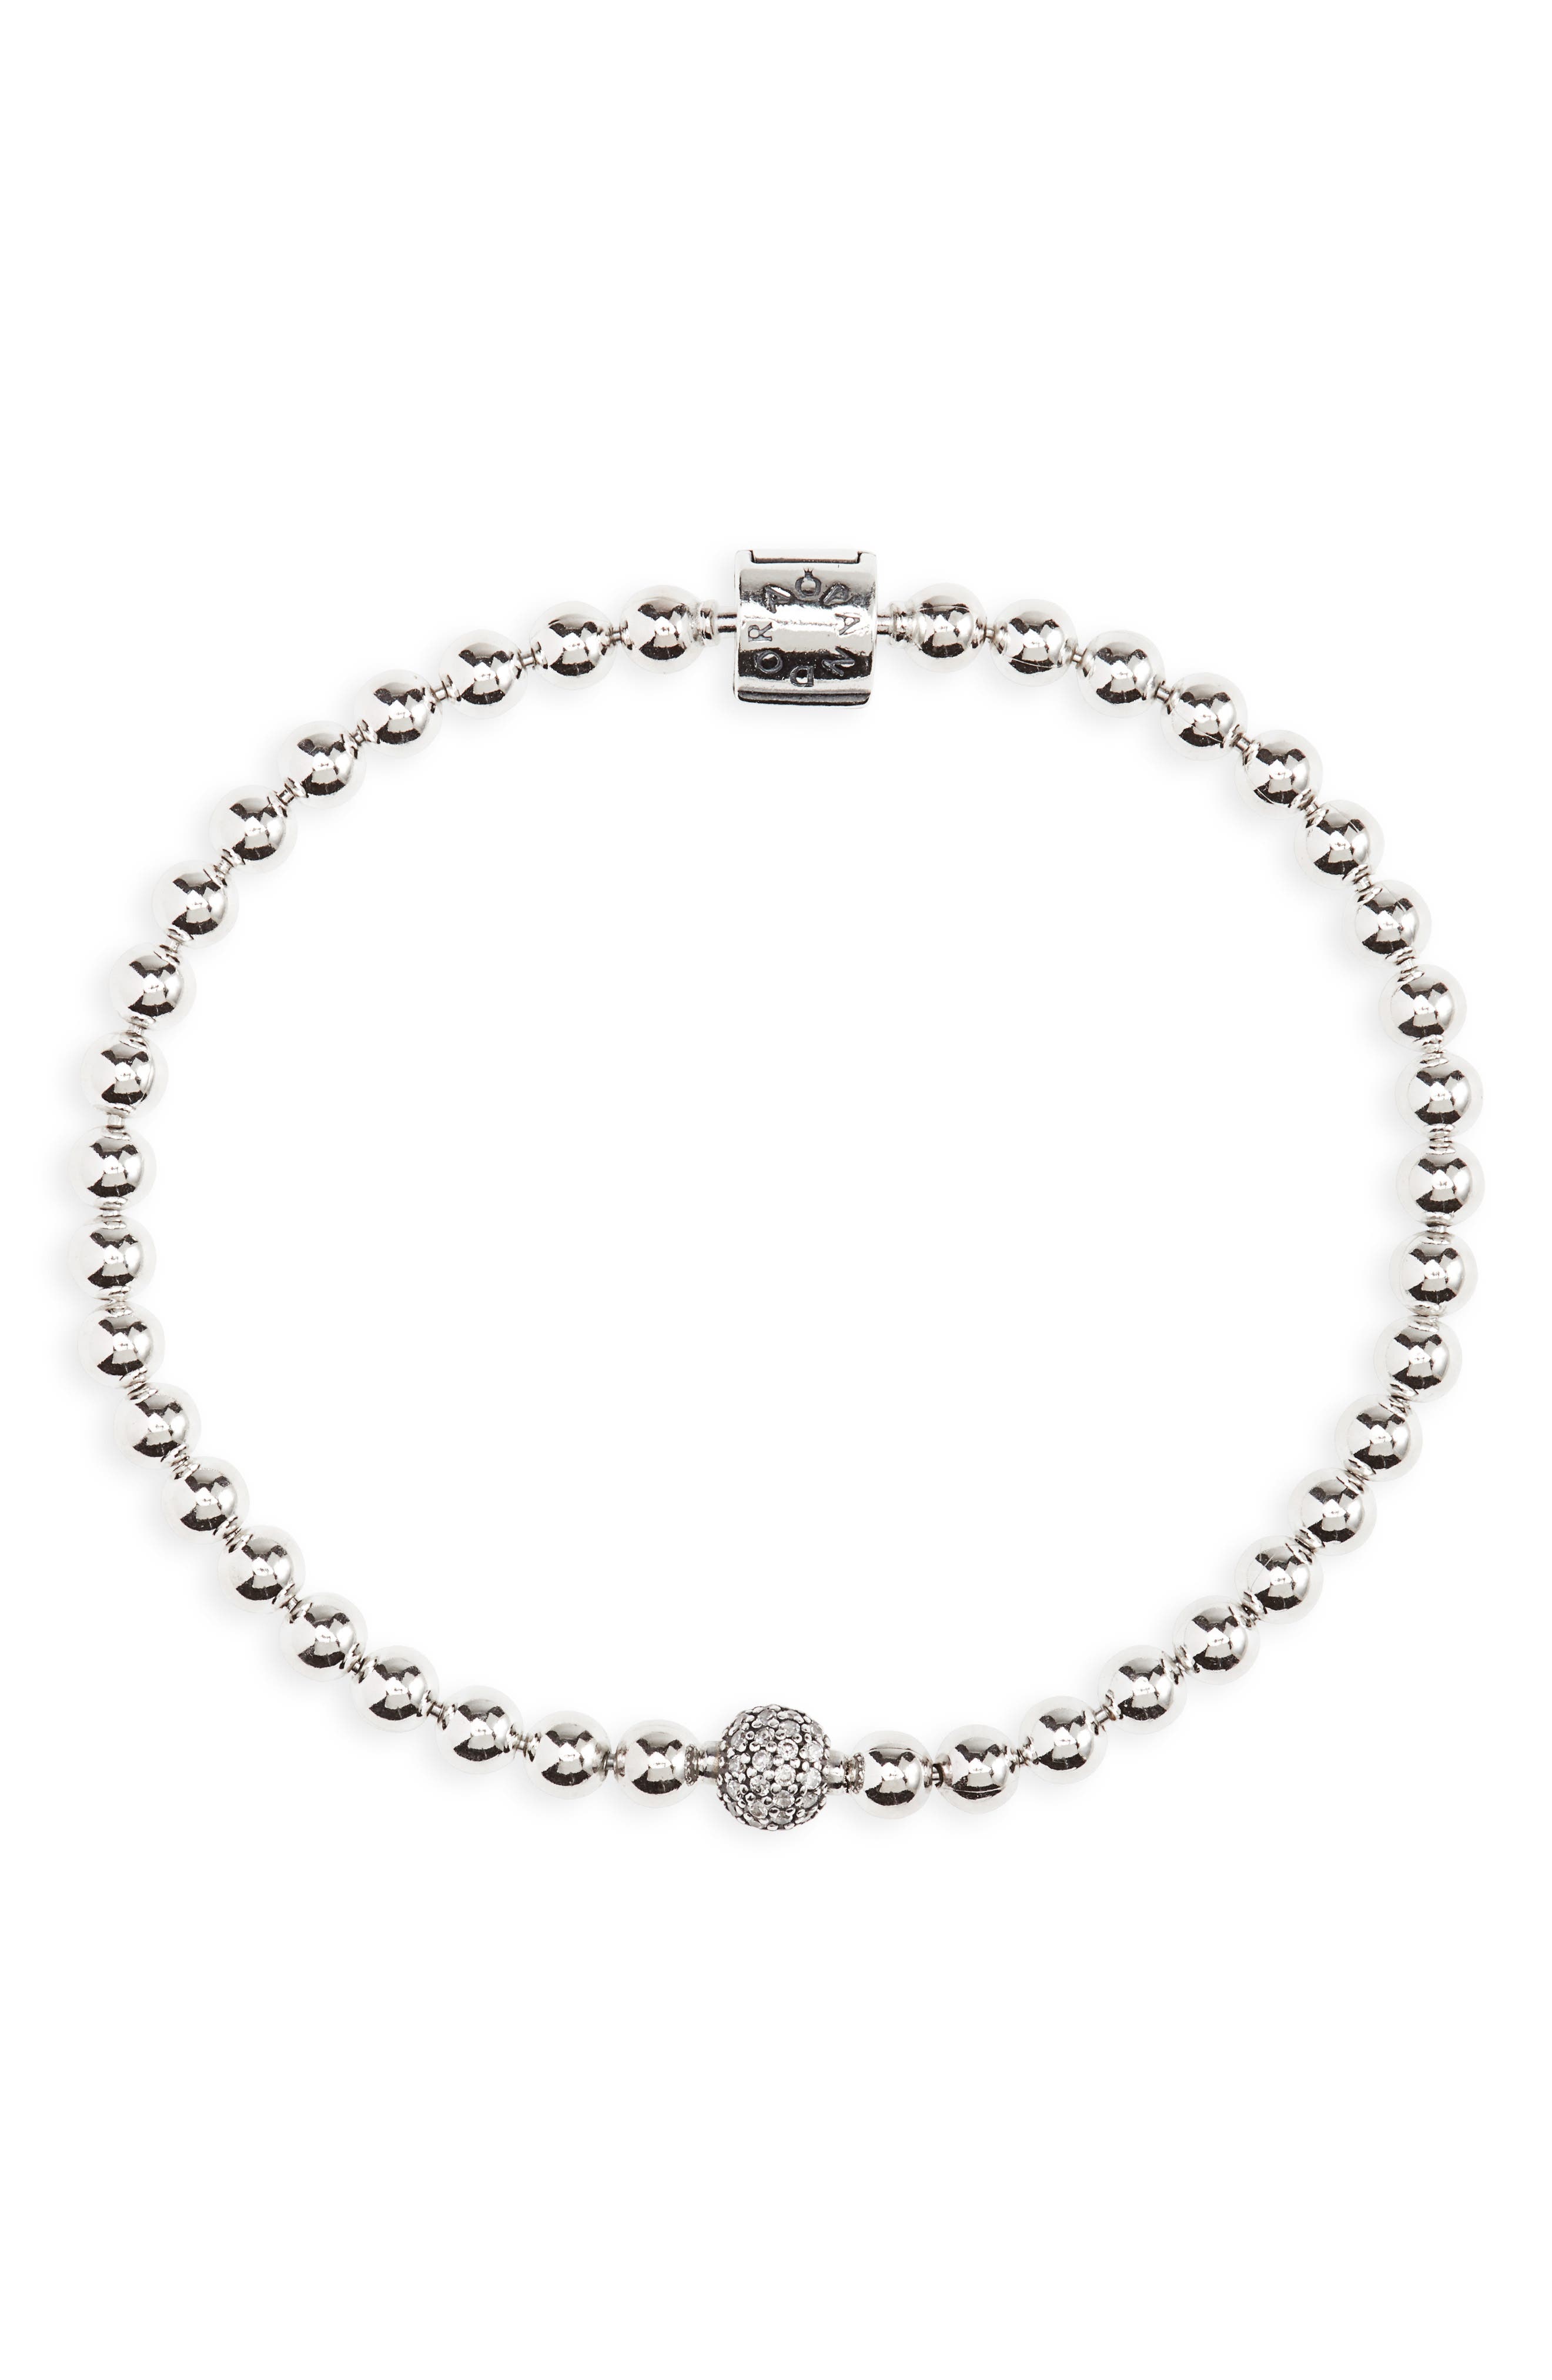 PANDORA Beads & Pave Bracelet Size 19 - 598342CZ-19